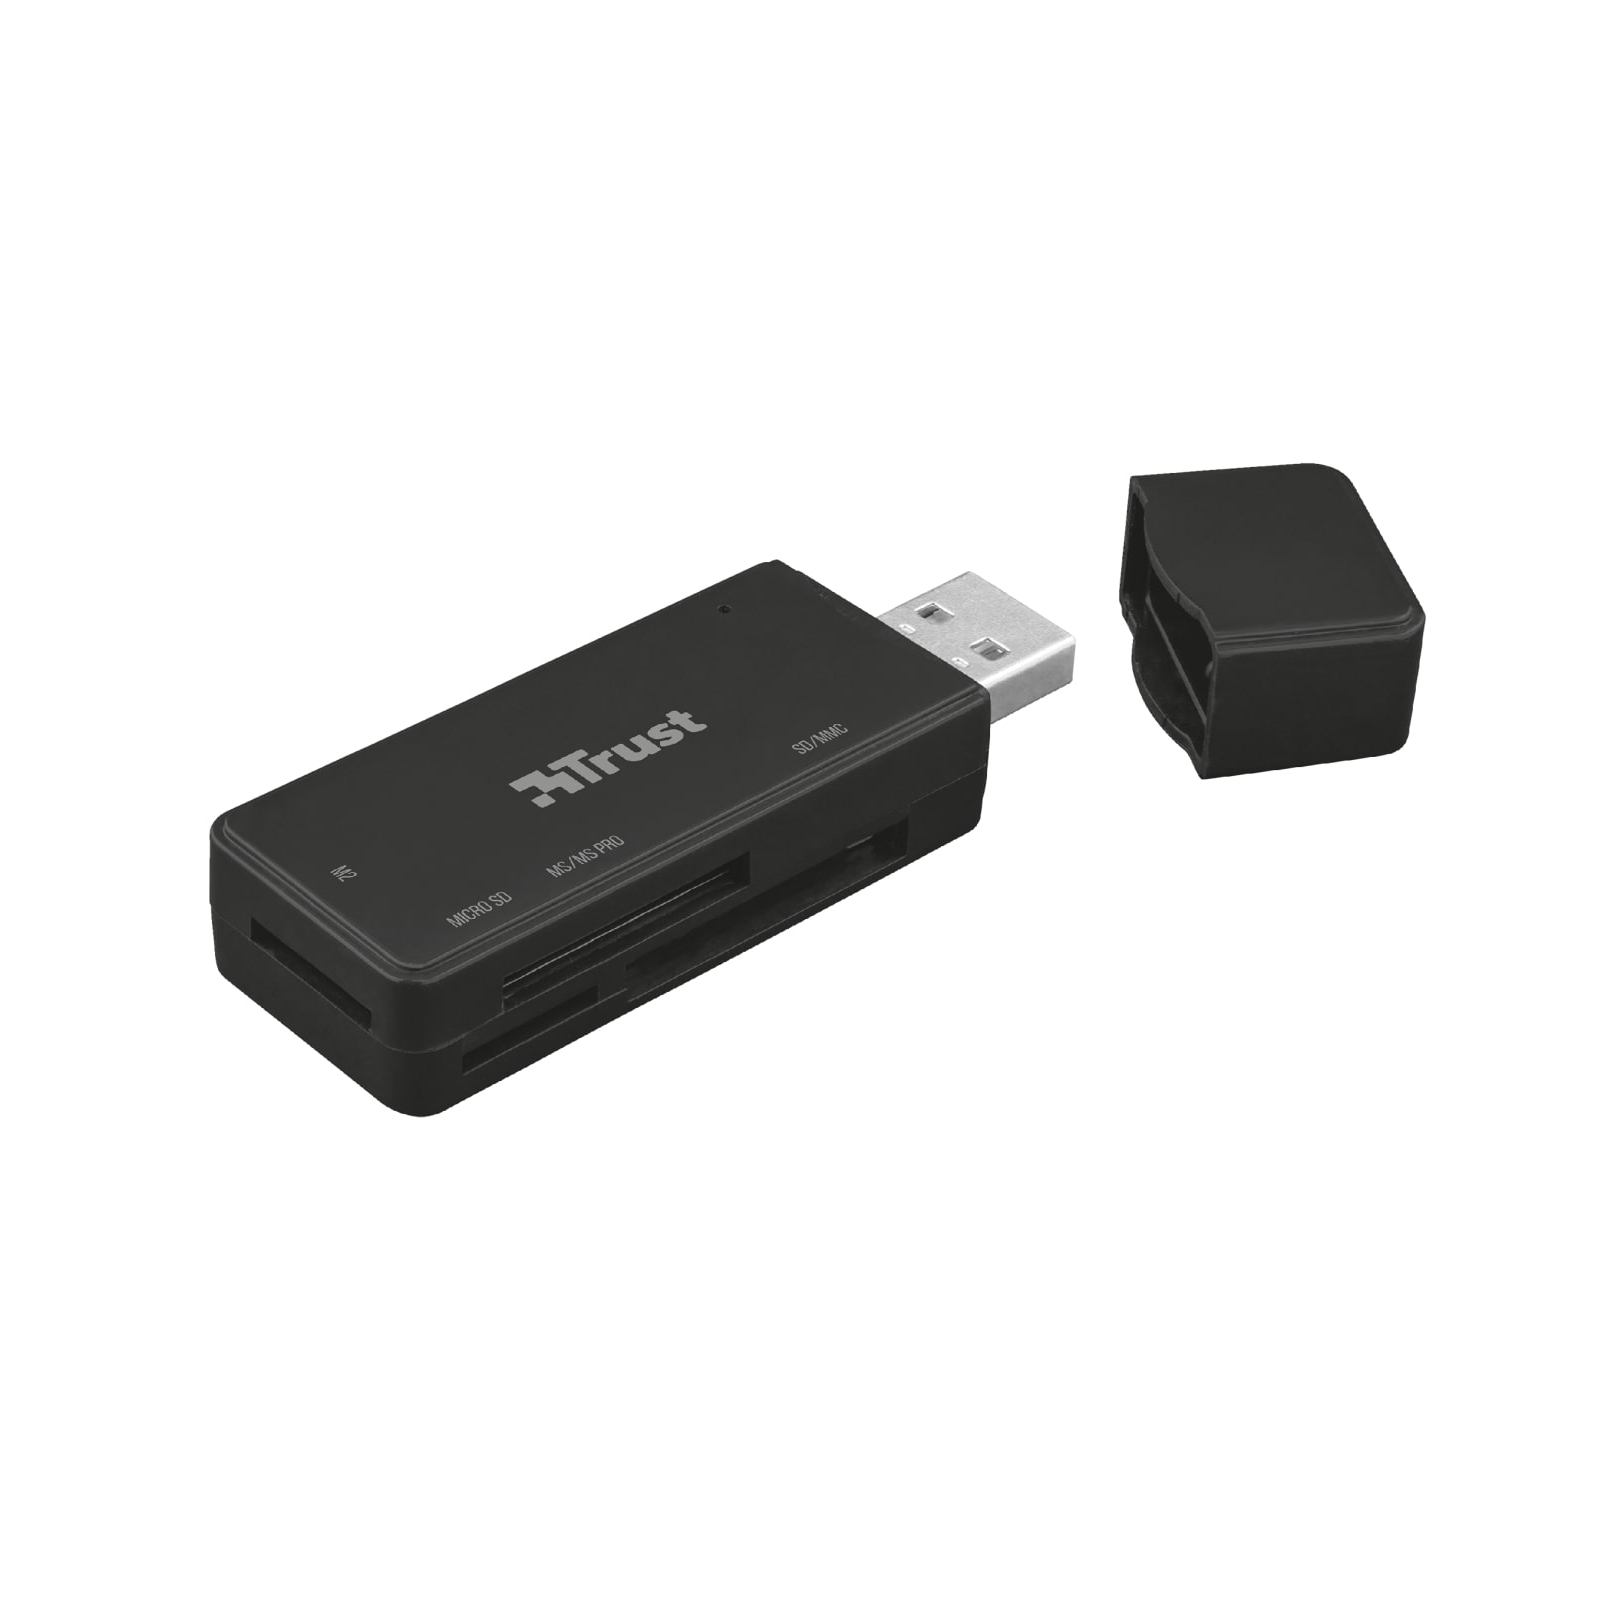 Зчитувач флеш-карт Trust Nanga USB 3.1 (21935) зображення 2